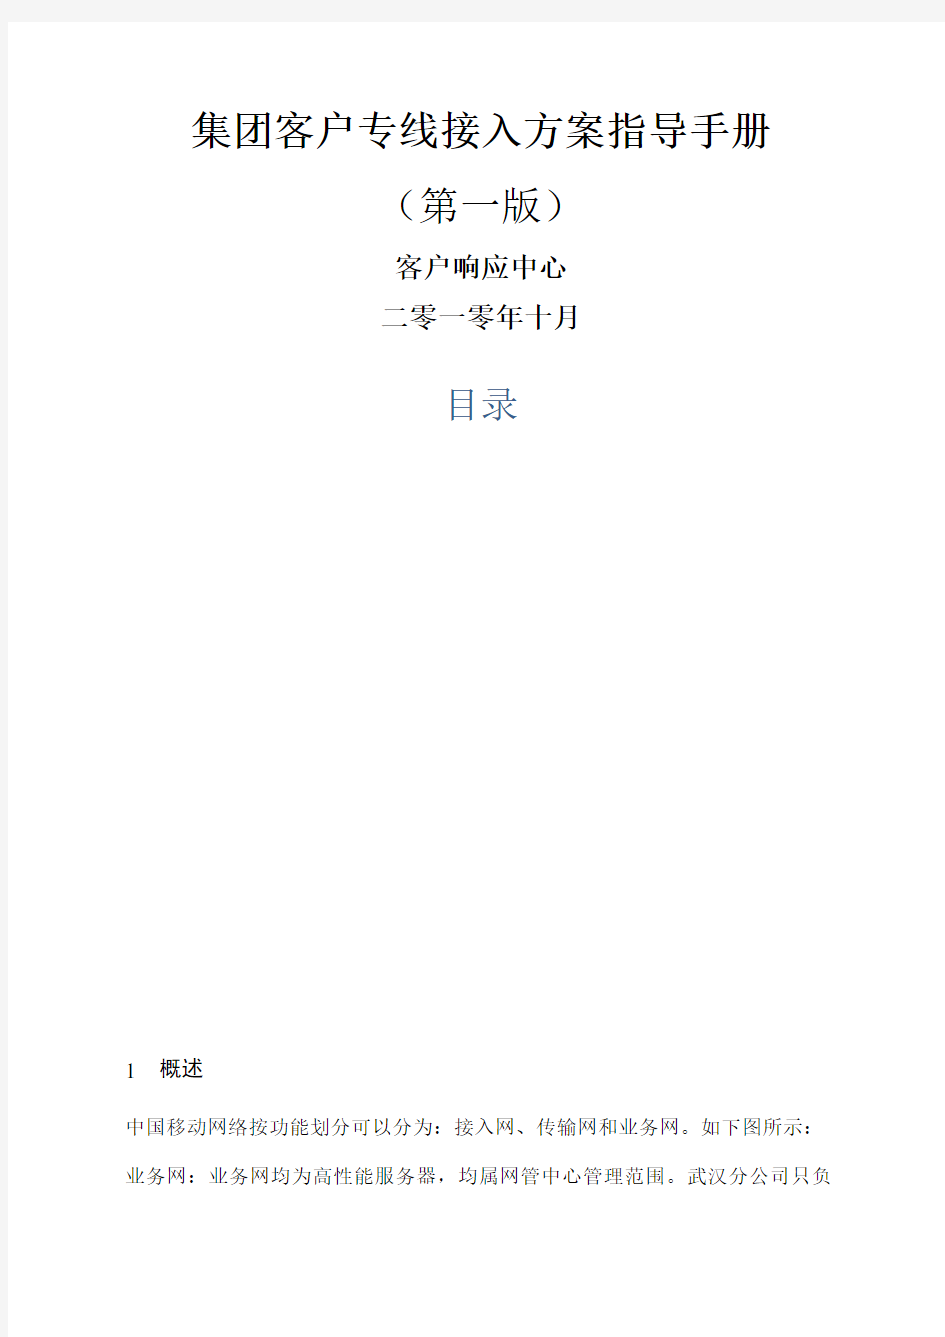 中国移动集团客户专线接入方案指导手册第一版